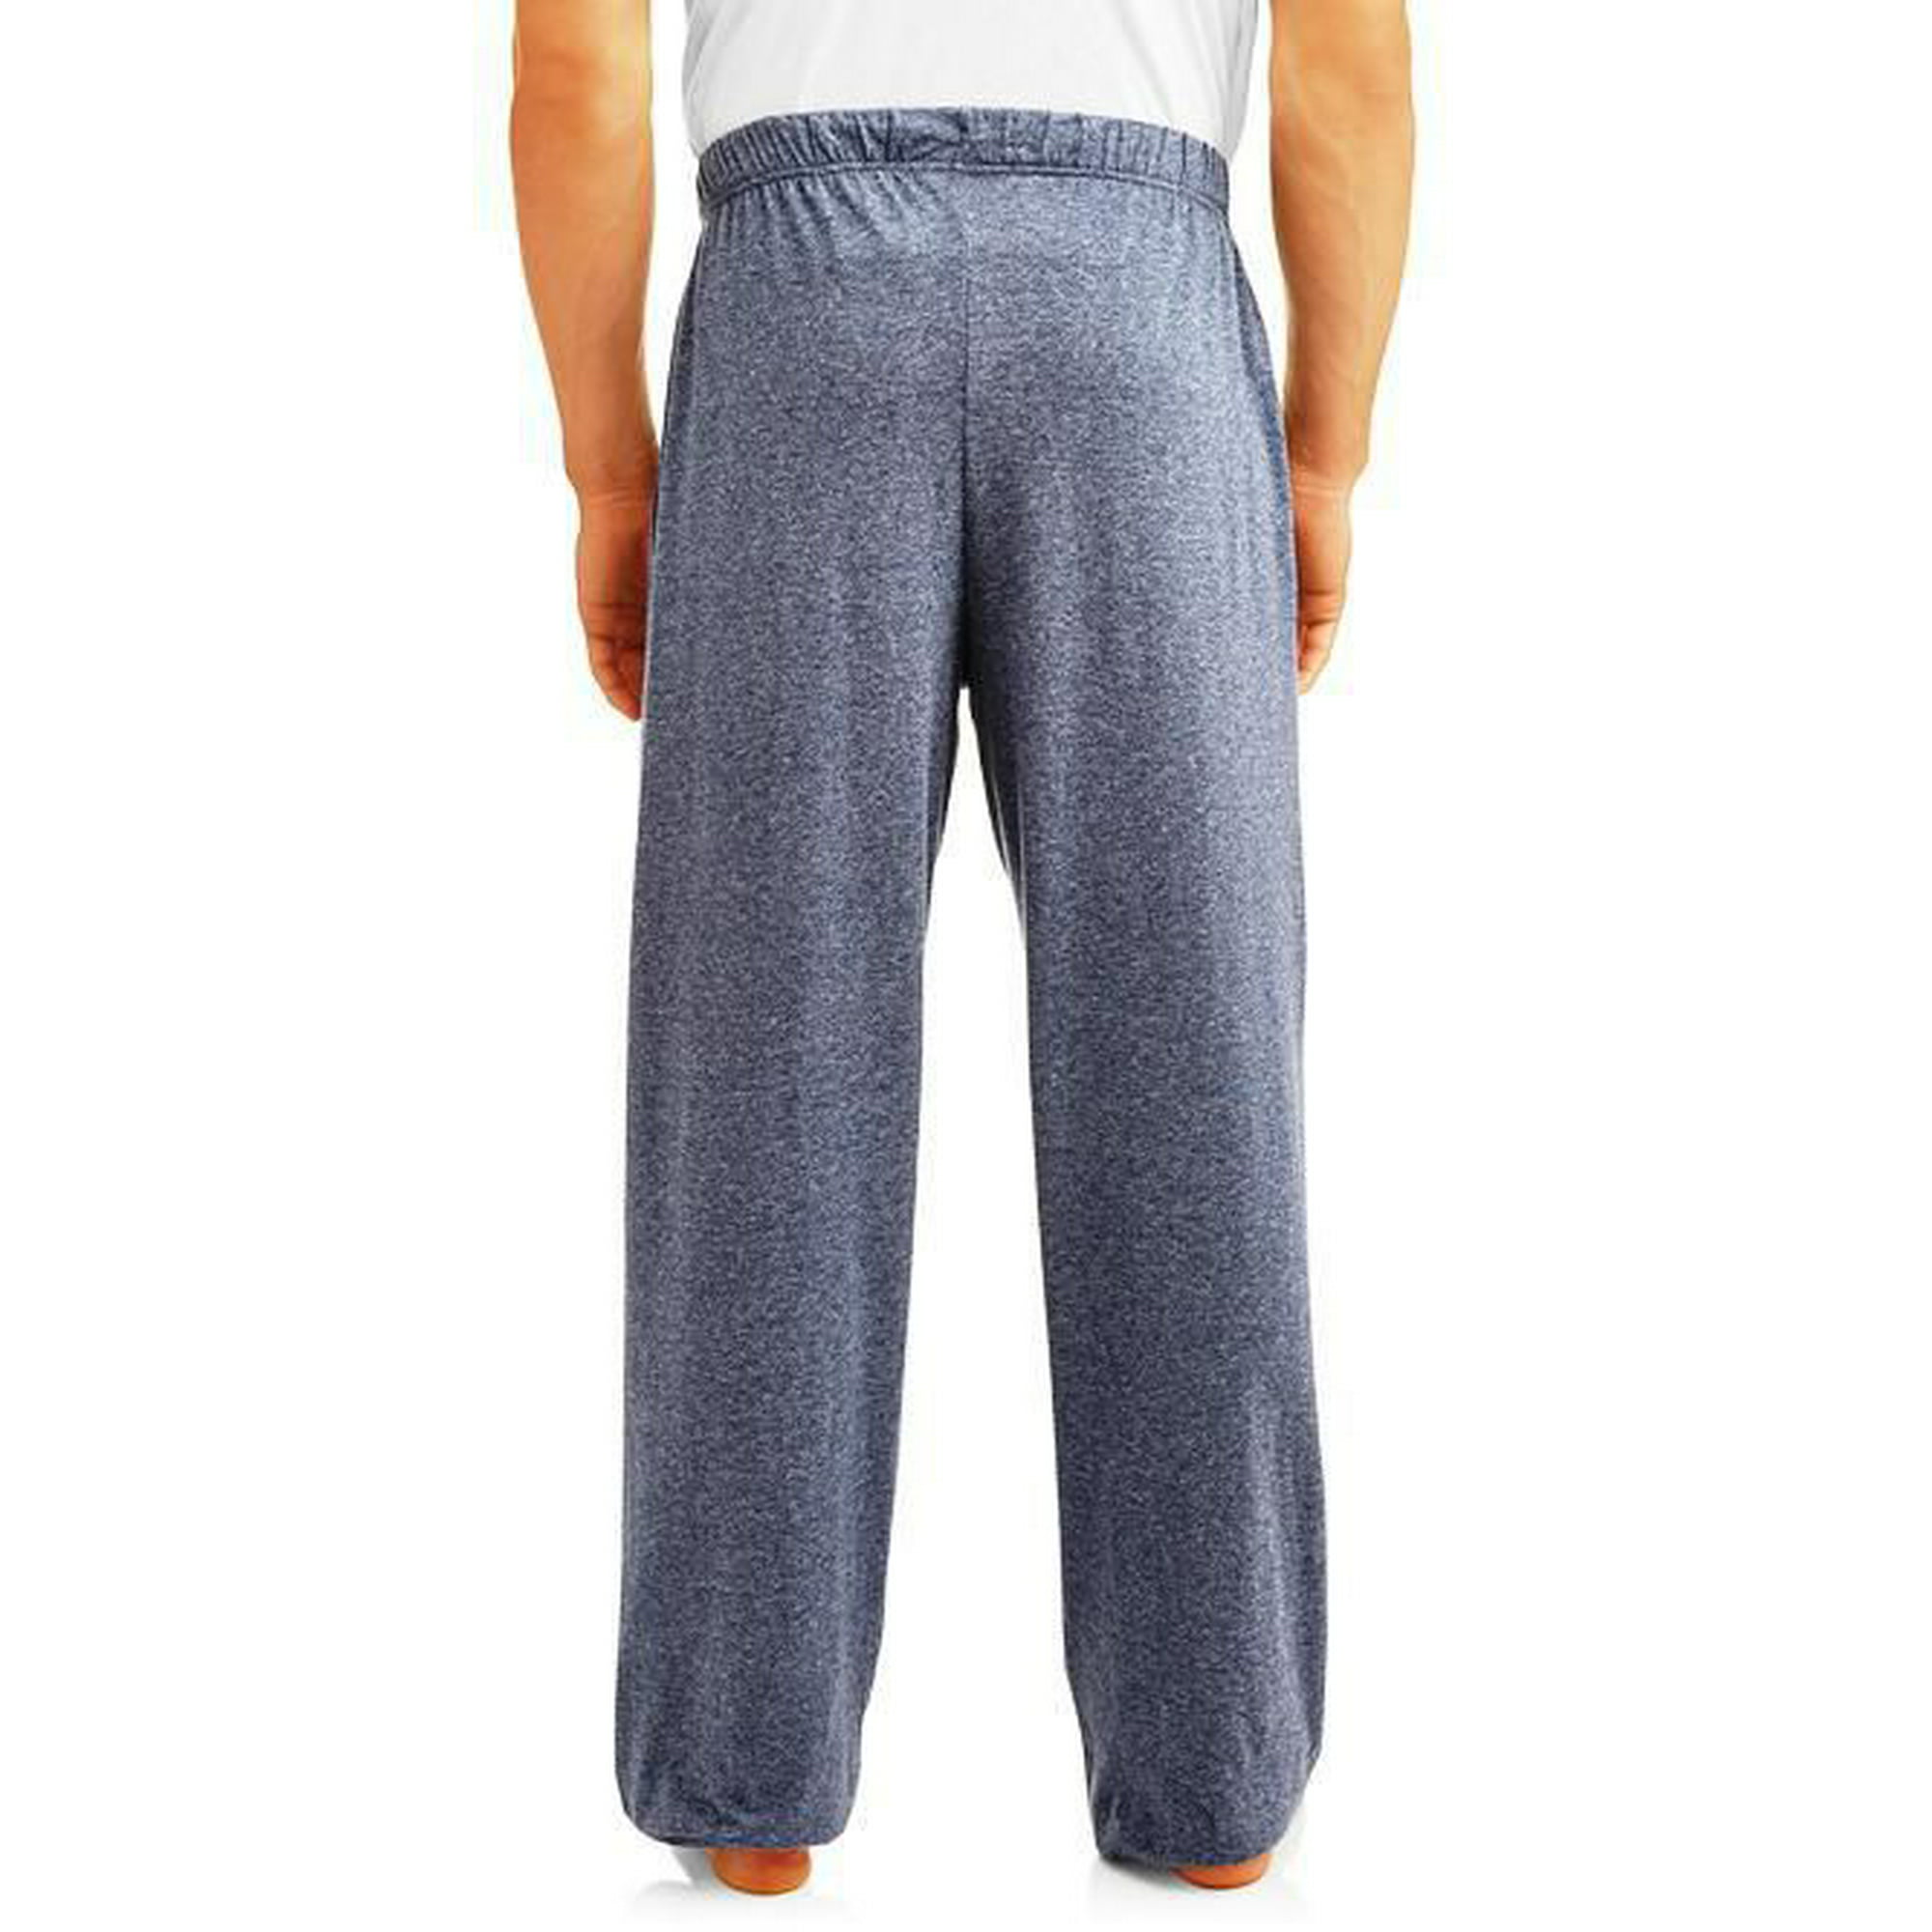 Hanes Men's Sleep pajama pant, SIZE'S: S-2XL 